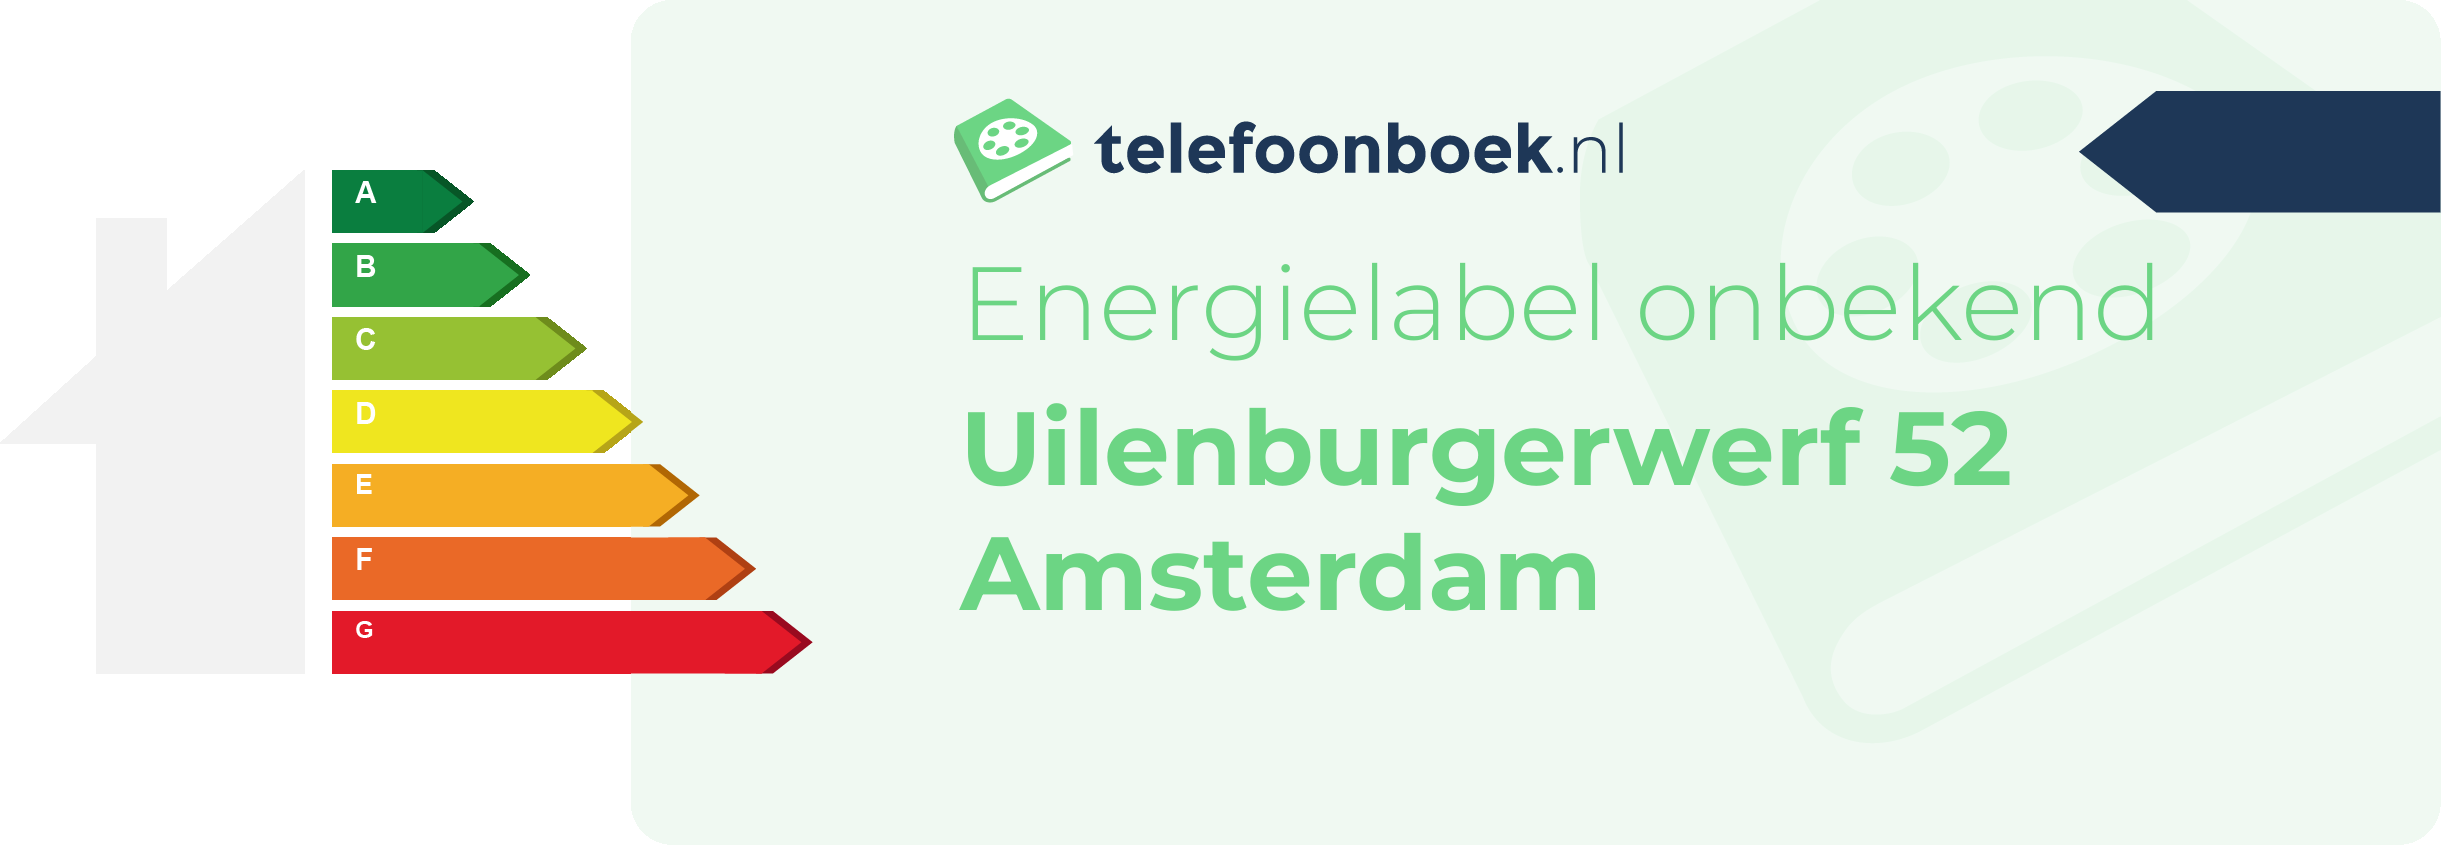 Energielabel Uilenburgerwerf 52 Amsterdam